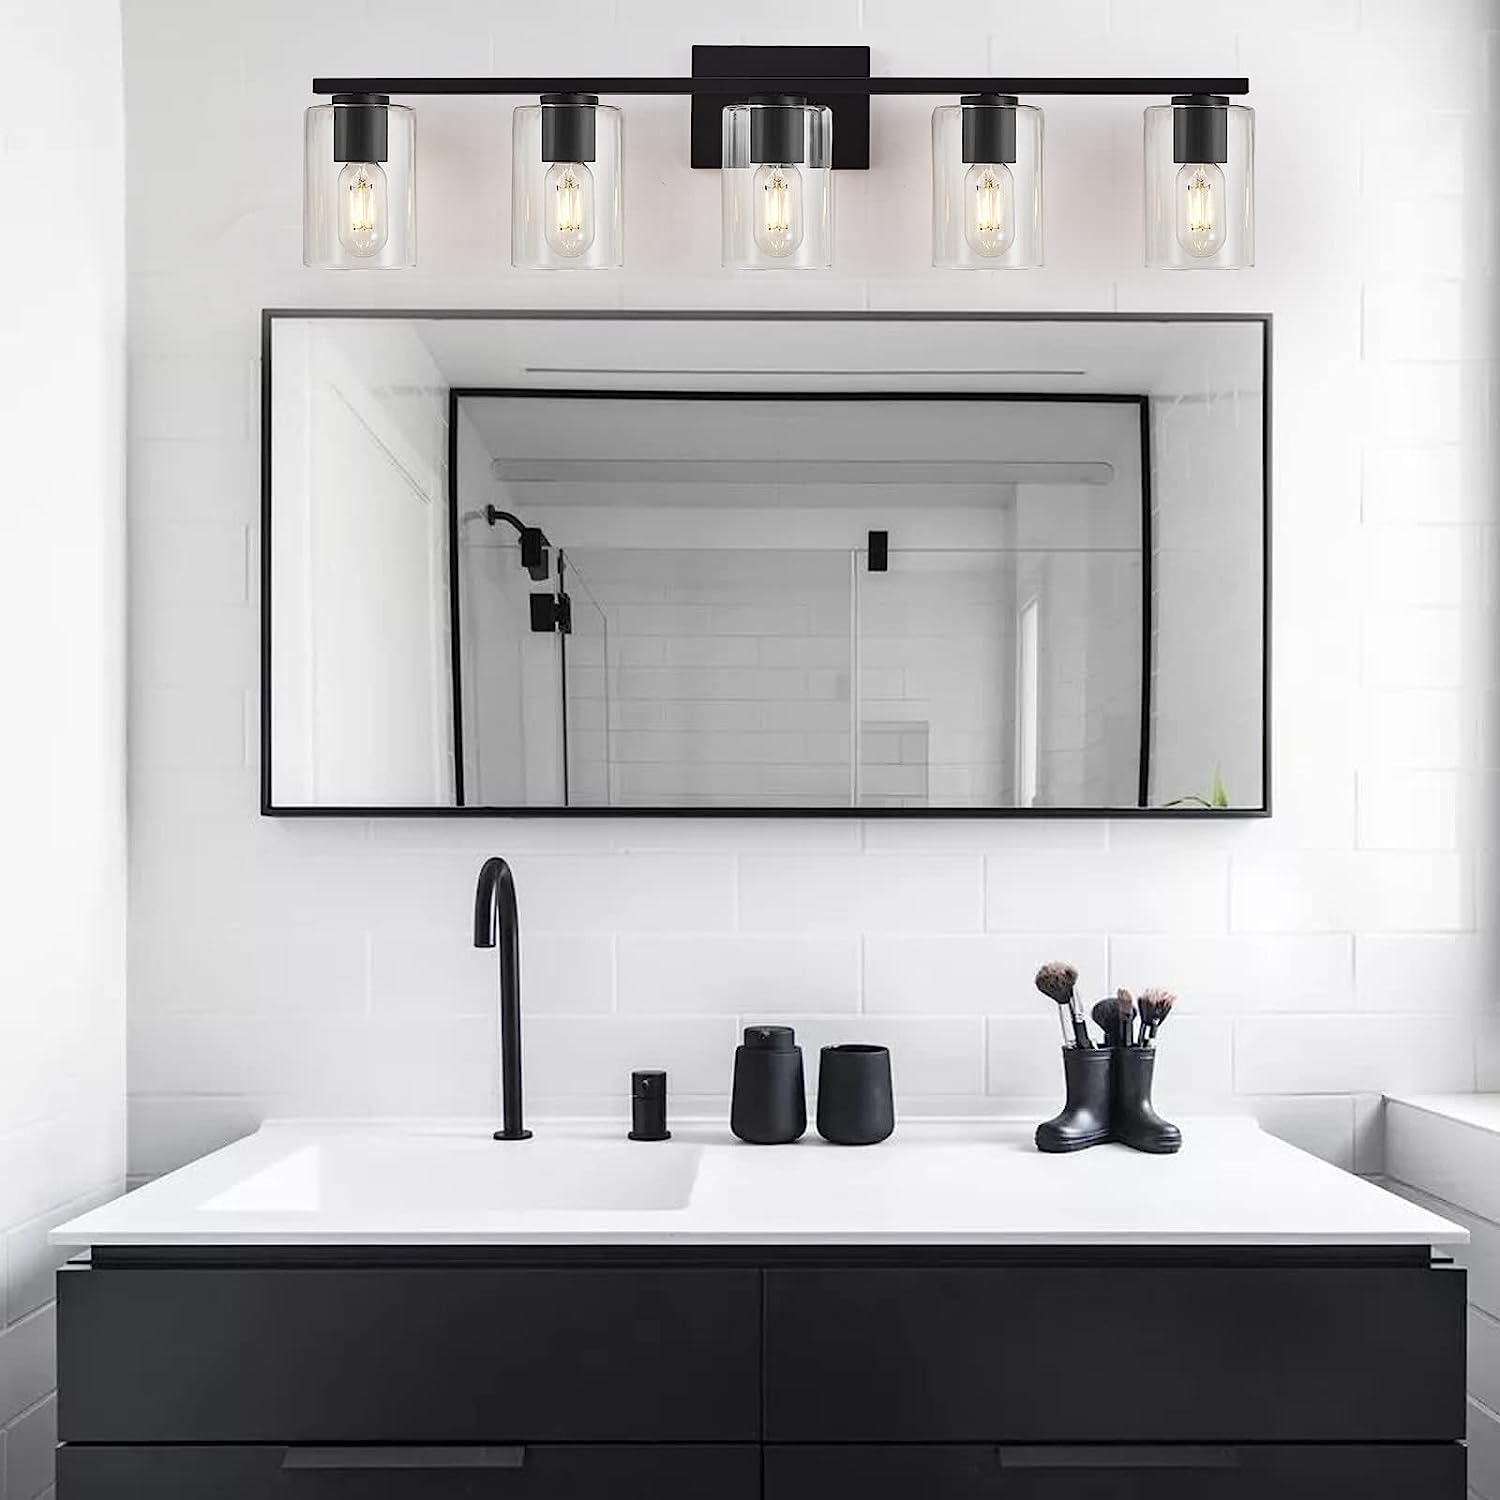 DRNANLIT 5-Light Bathroom Light Over Mirror